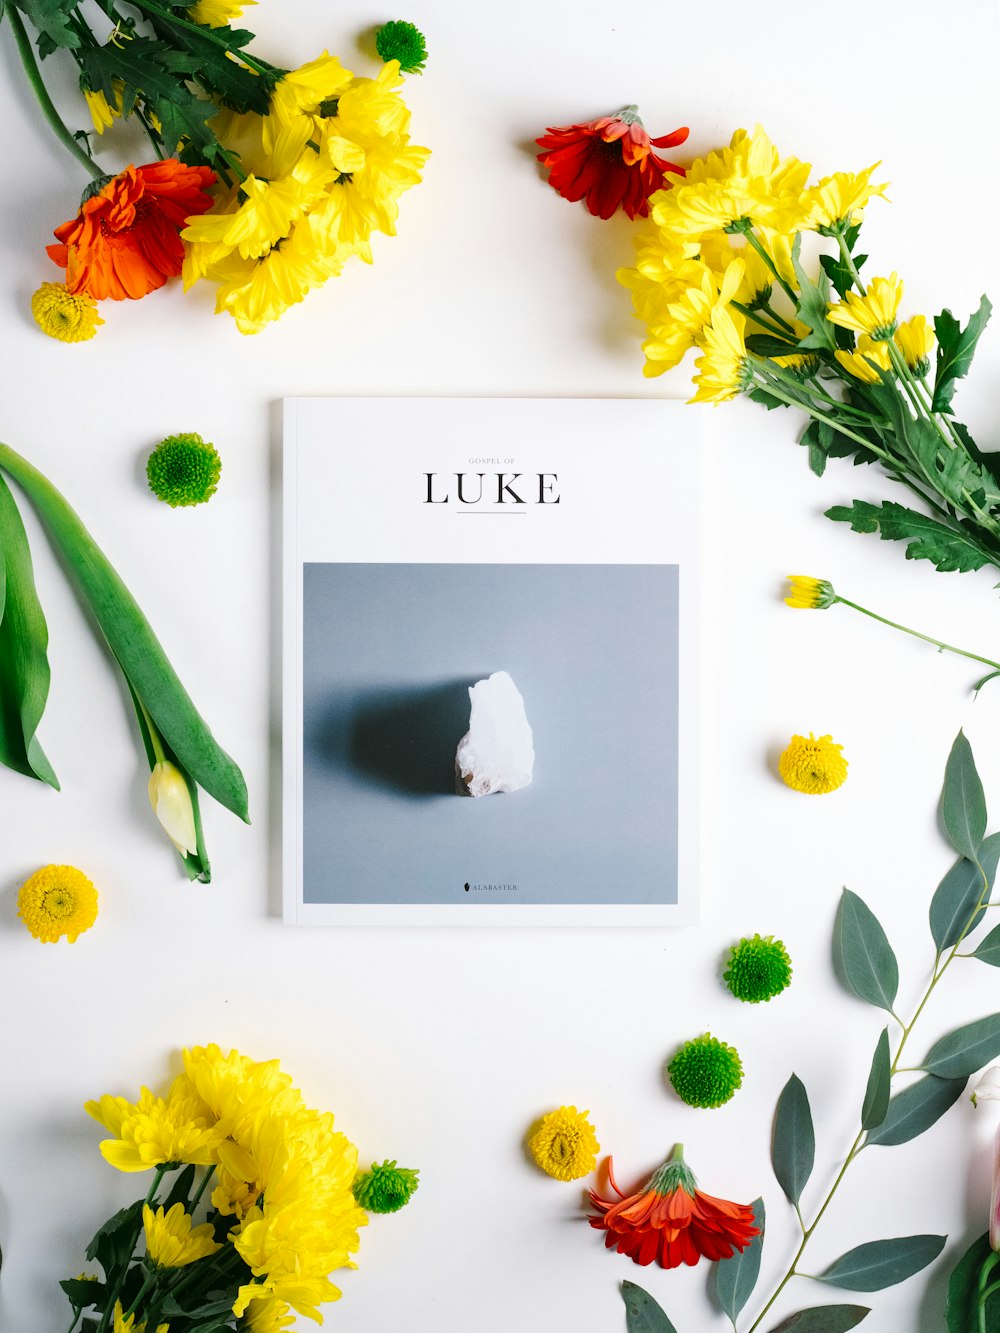 Libro di Luca, pietra bianca e fiori gialli e rossi